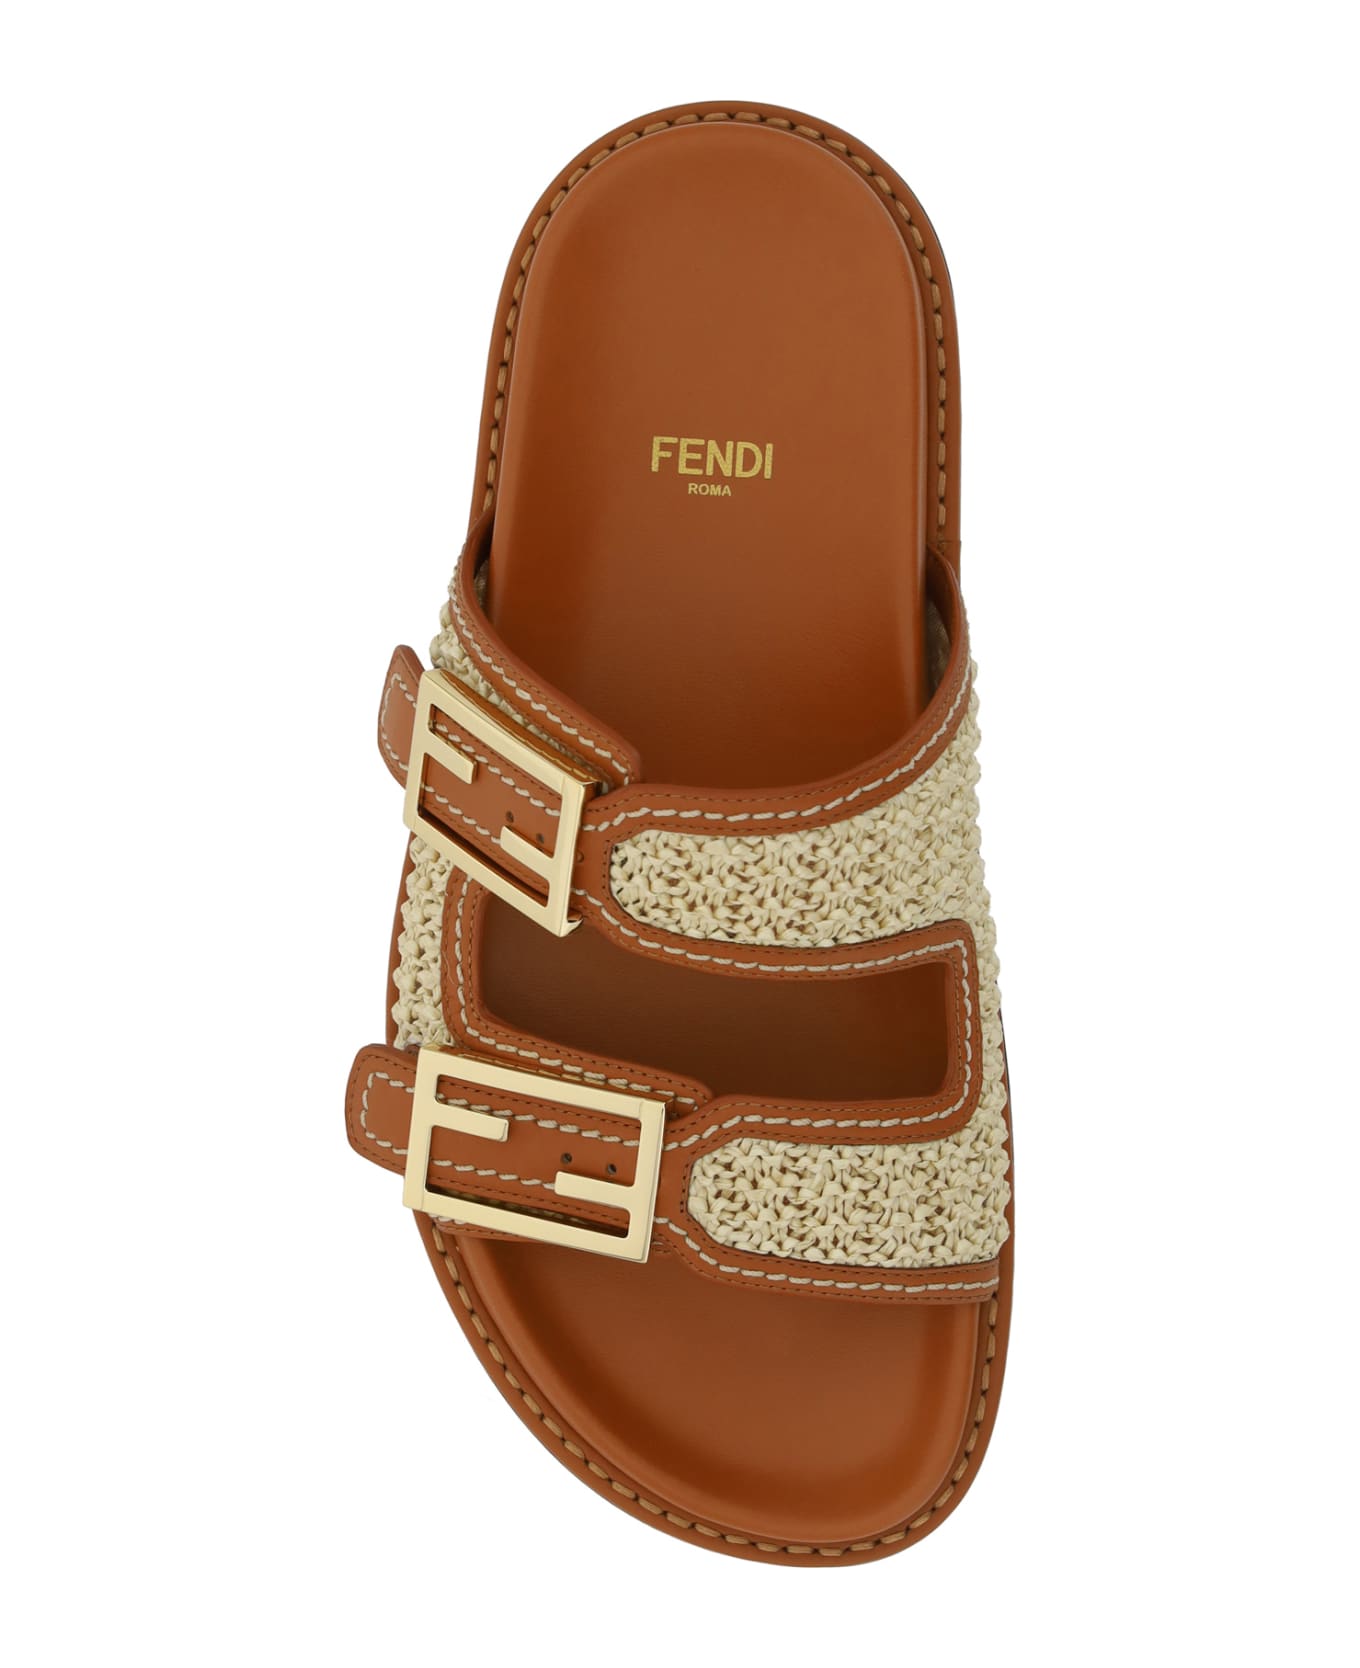 Fendi Double Sandals - Brown